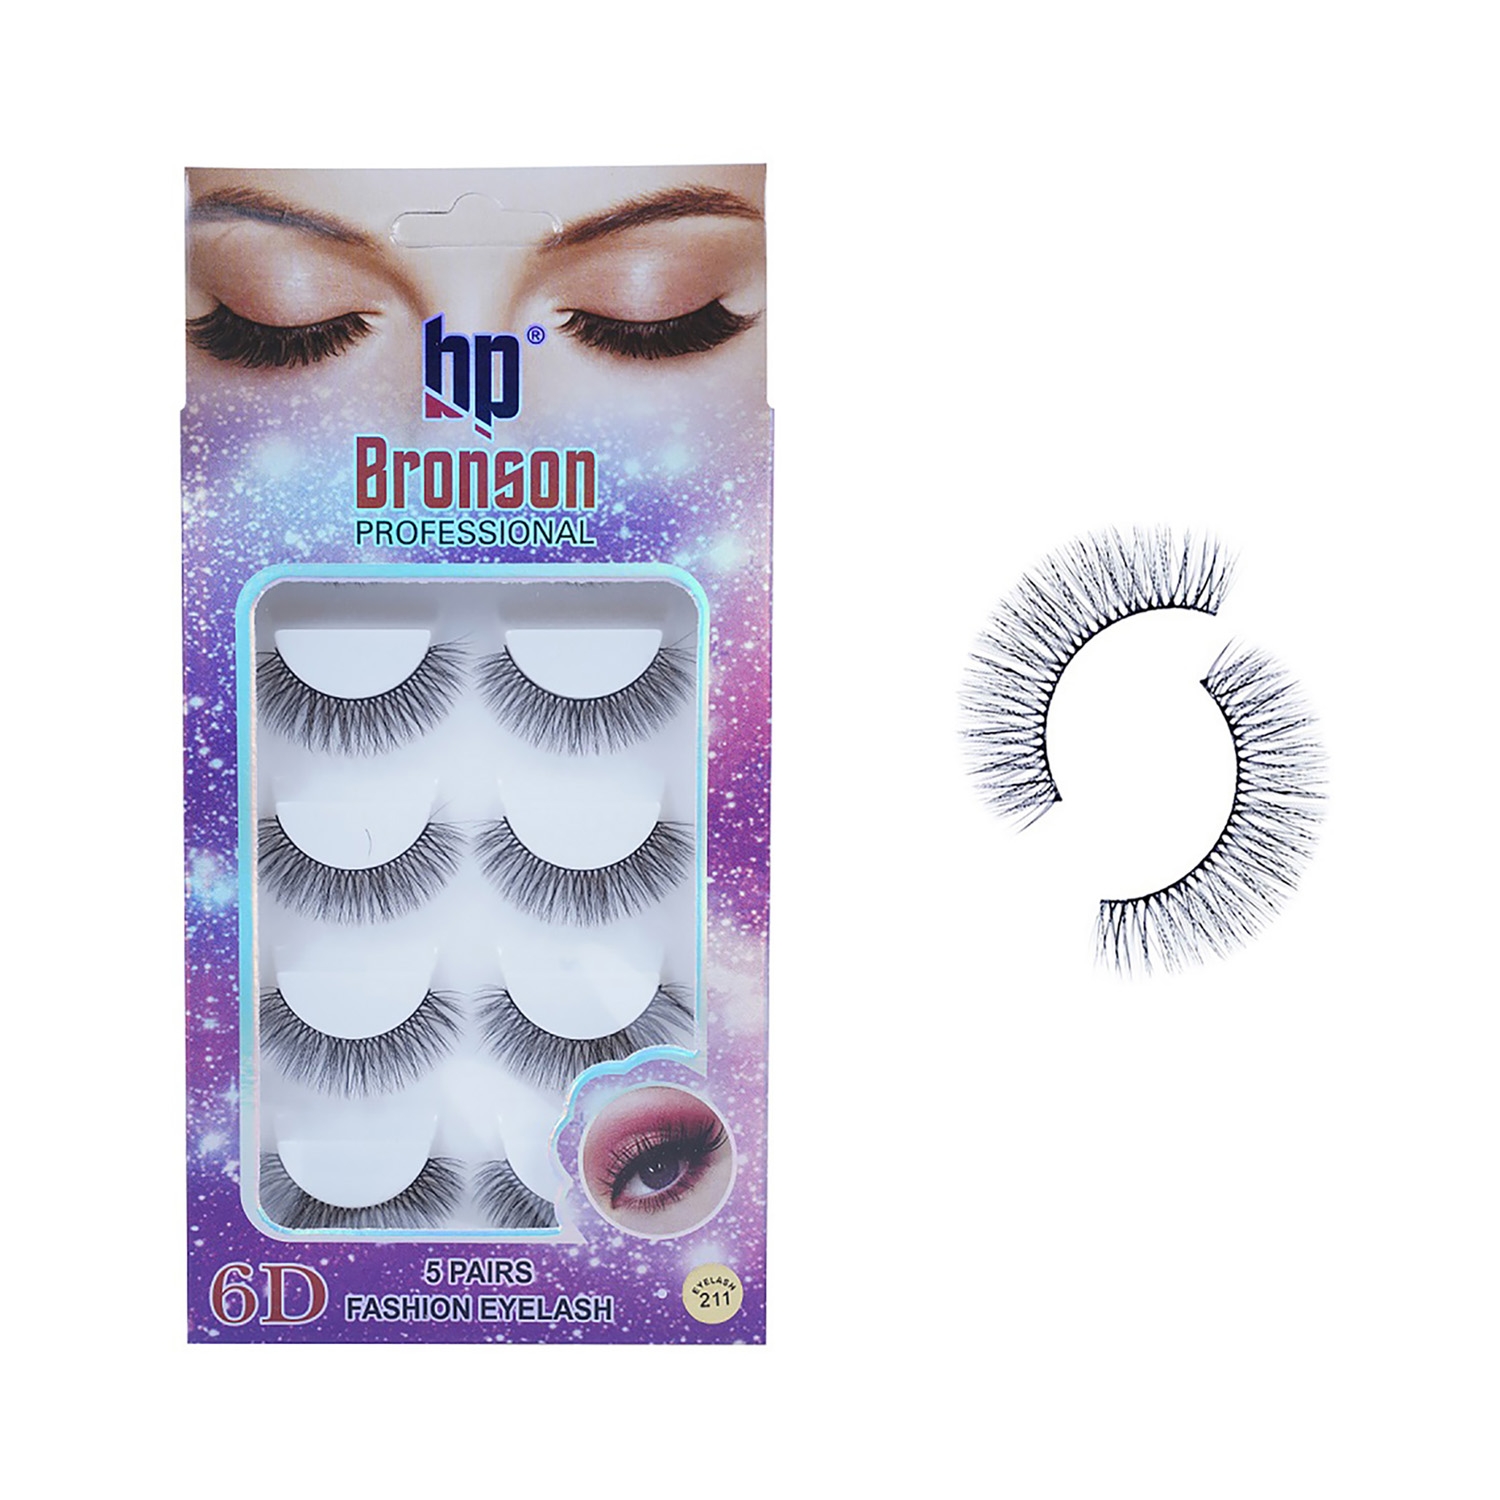 Bronson Professional | Bronson Professional Pair 6D Long & Natural False Eyelashes - 211 - Black (5 Pairs)